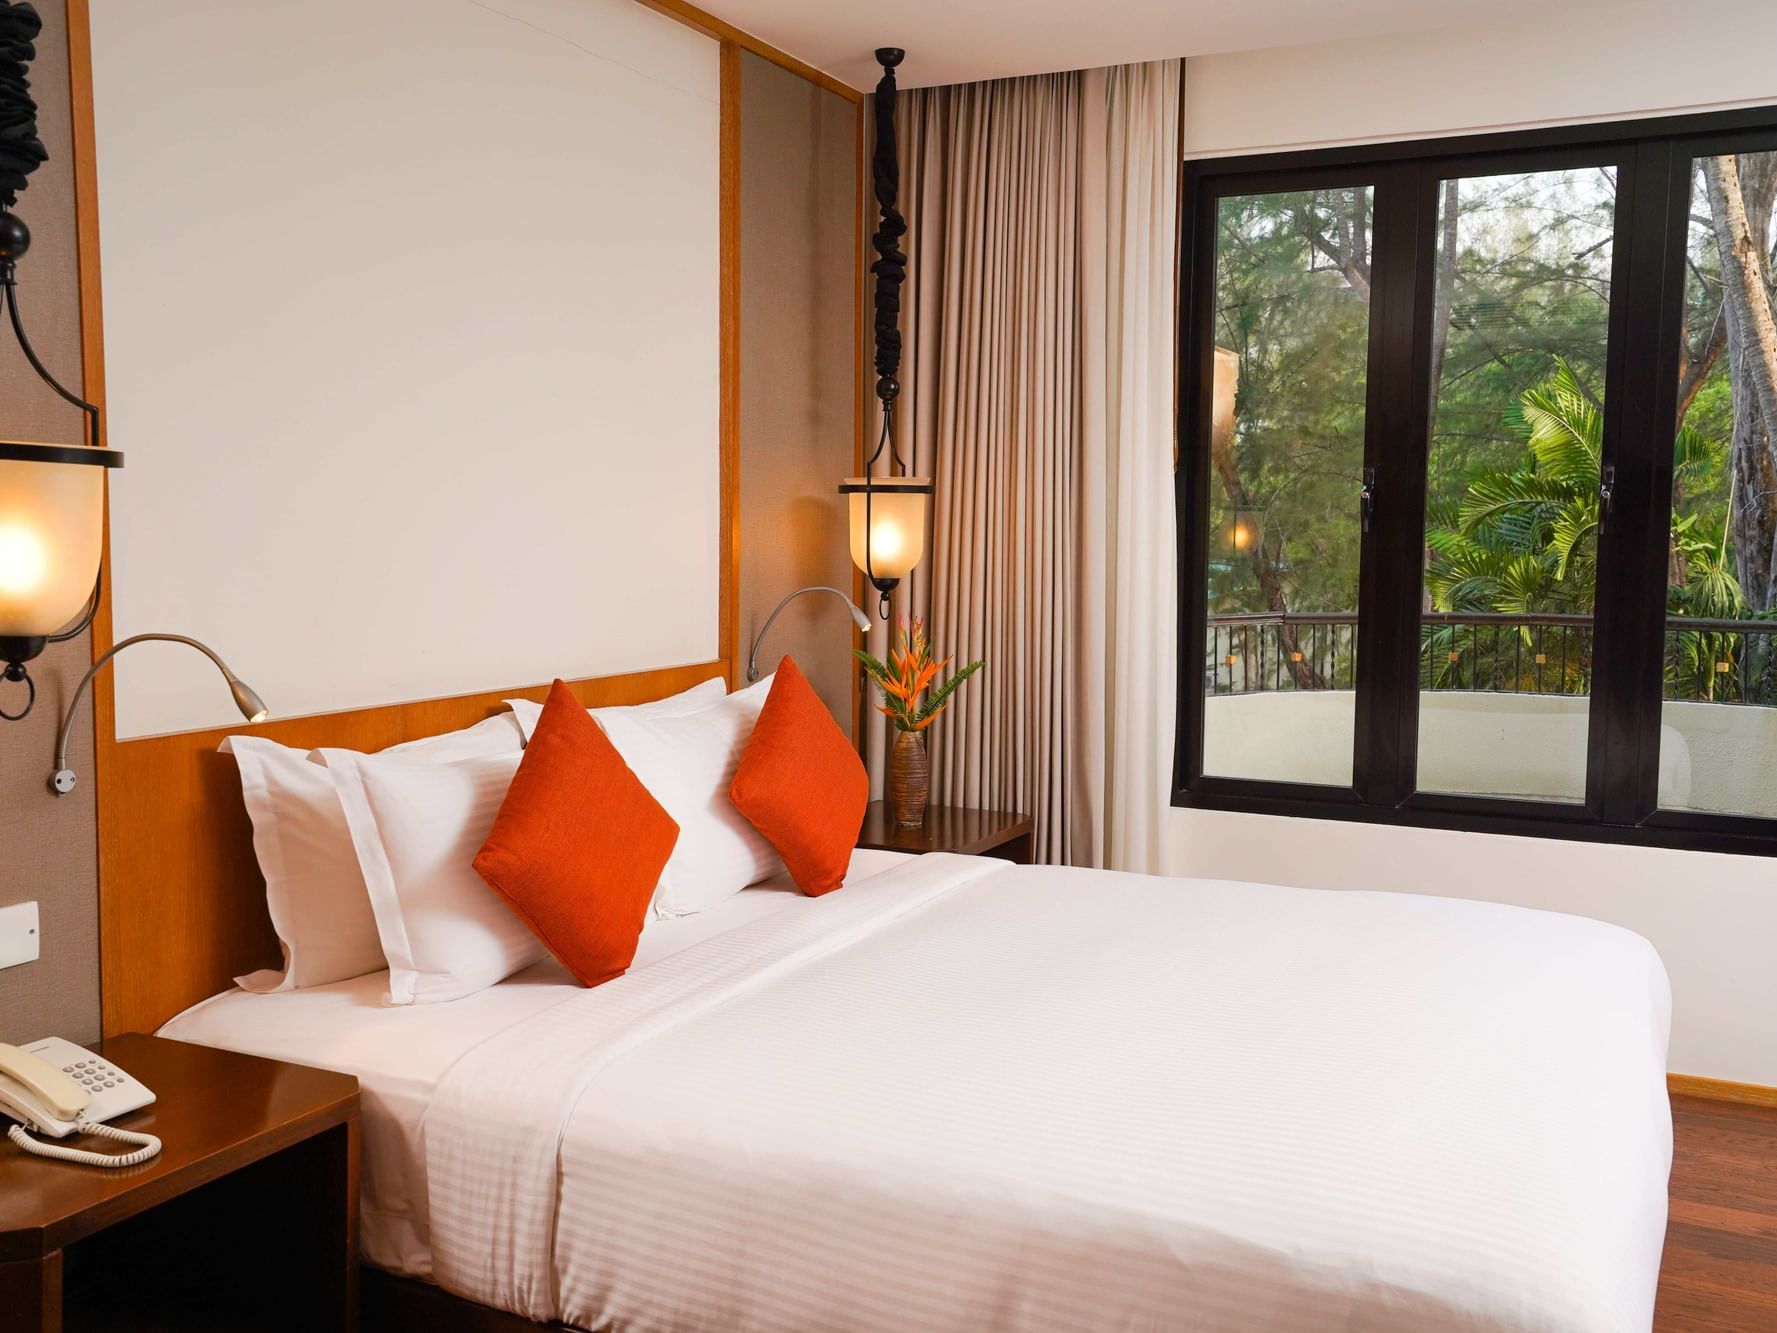 King Bed in Cahaya Suite at Tanjung Rhu Resort Langkawi